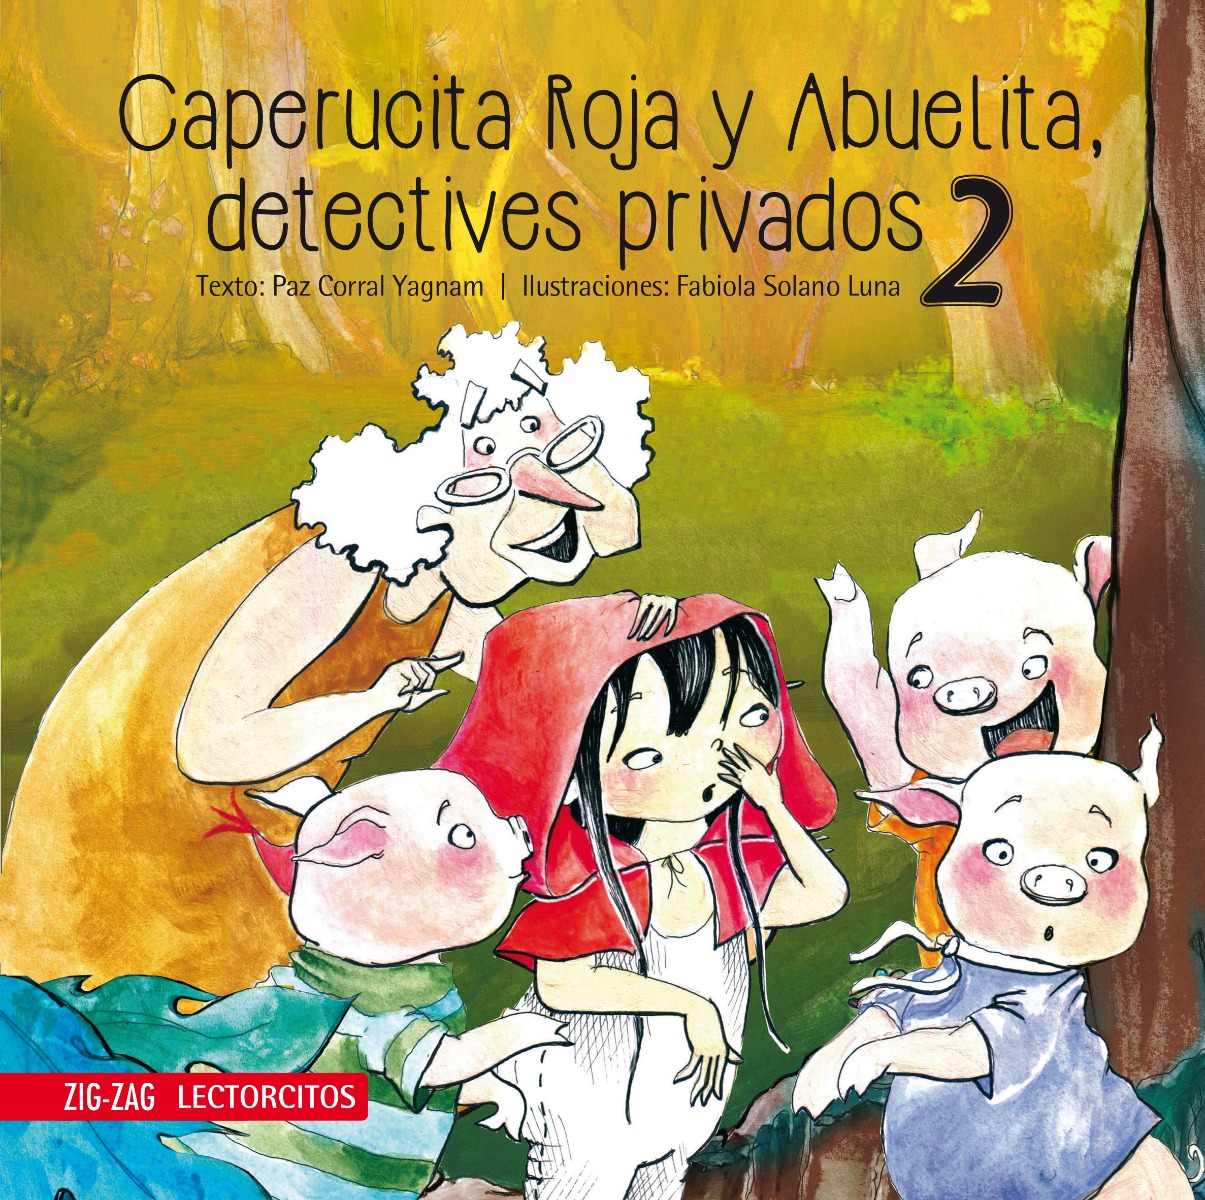 Caperucita Roja y Abuelita, detectives privados 2